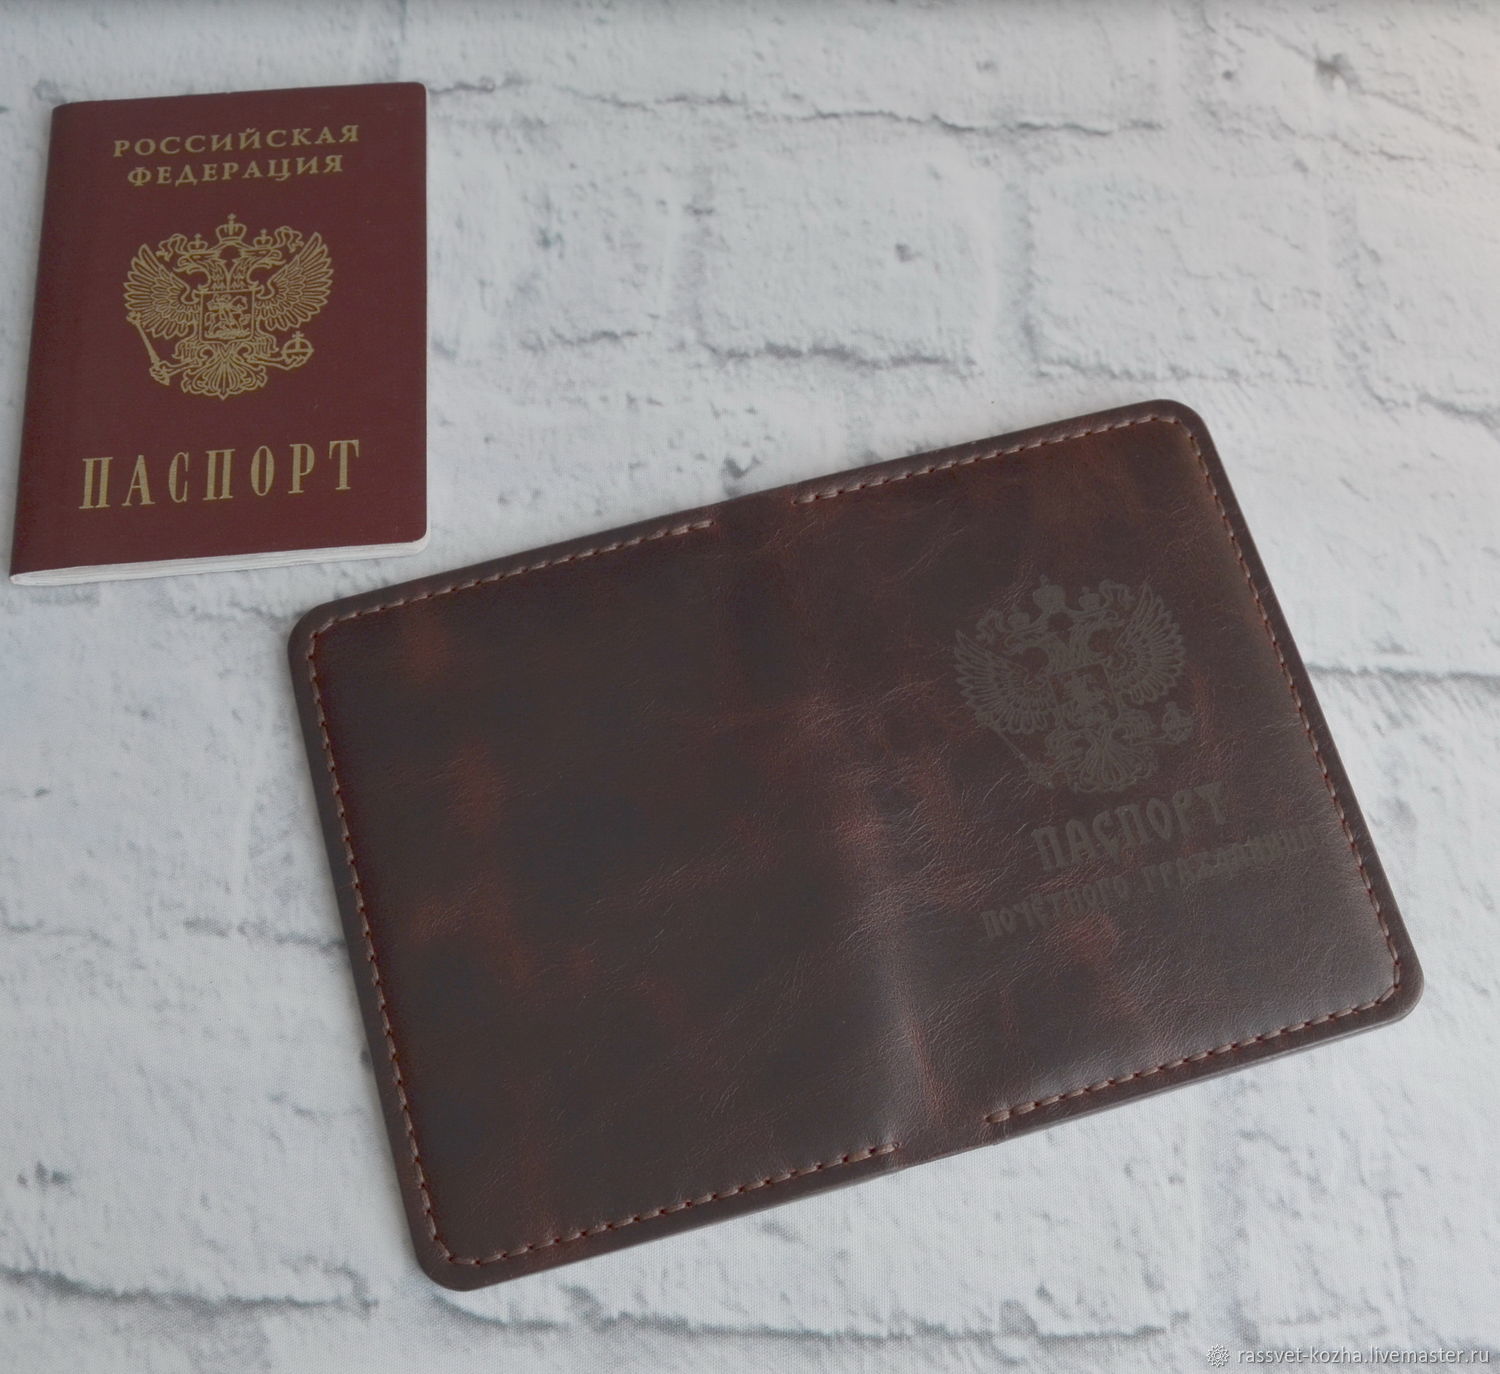 Обложка для паспорта п-003